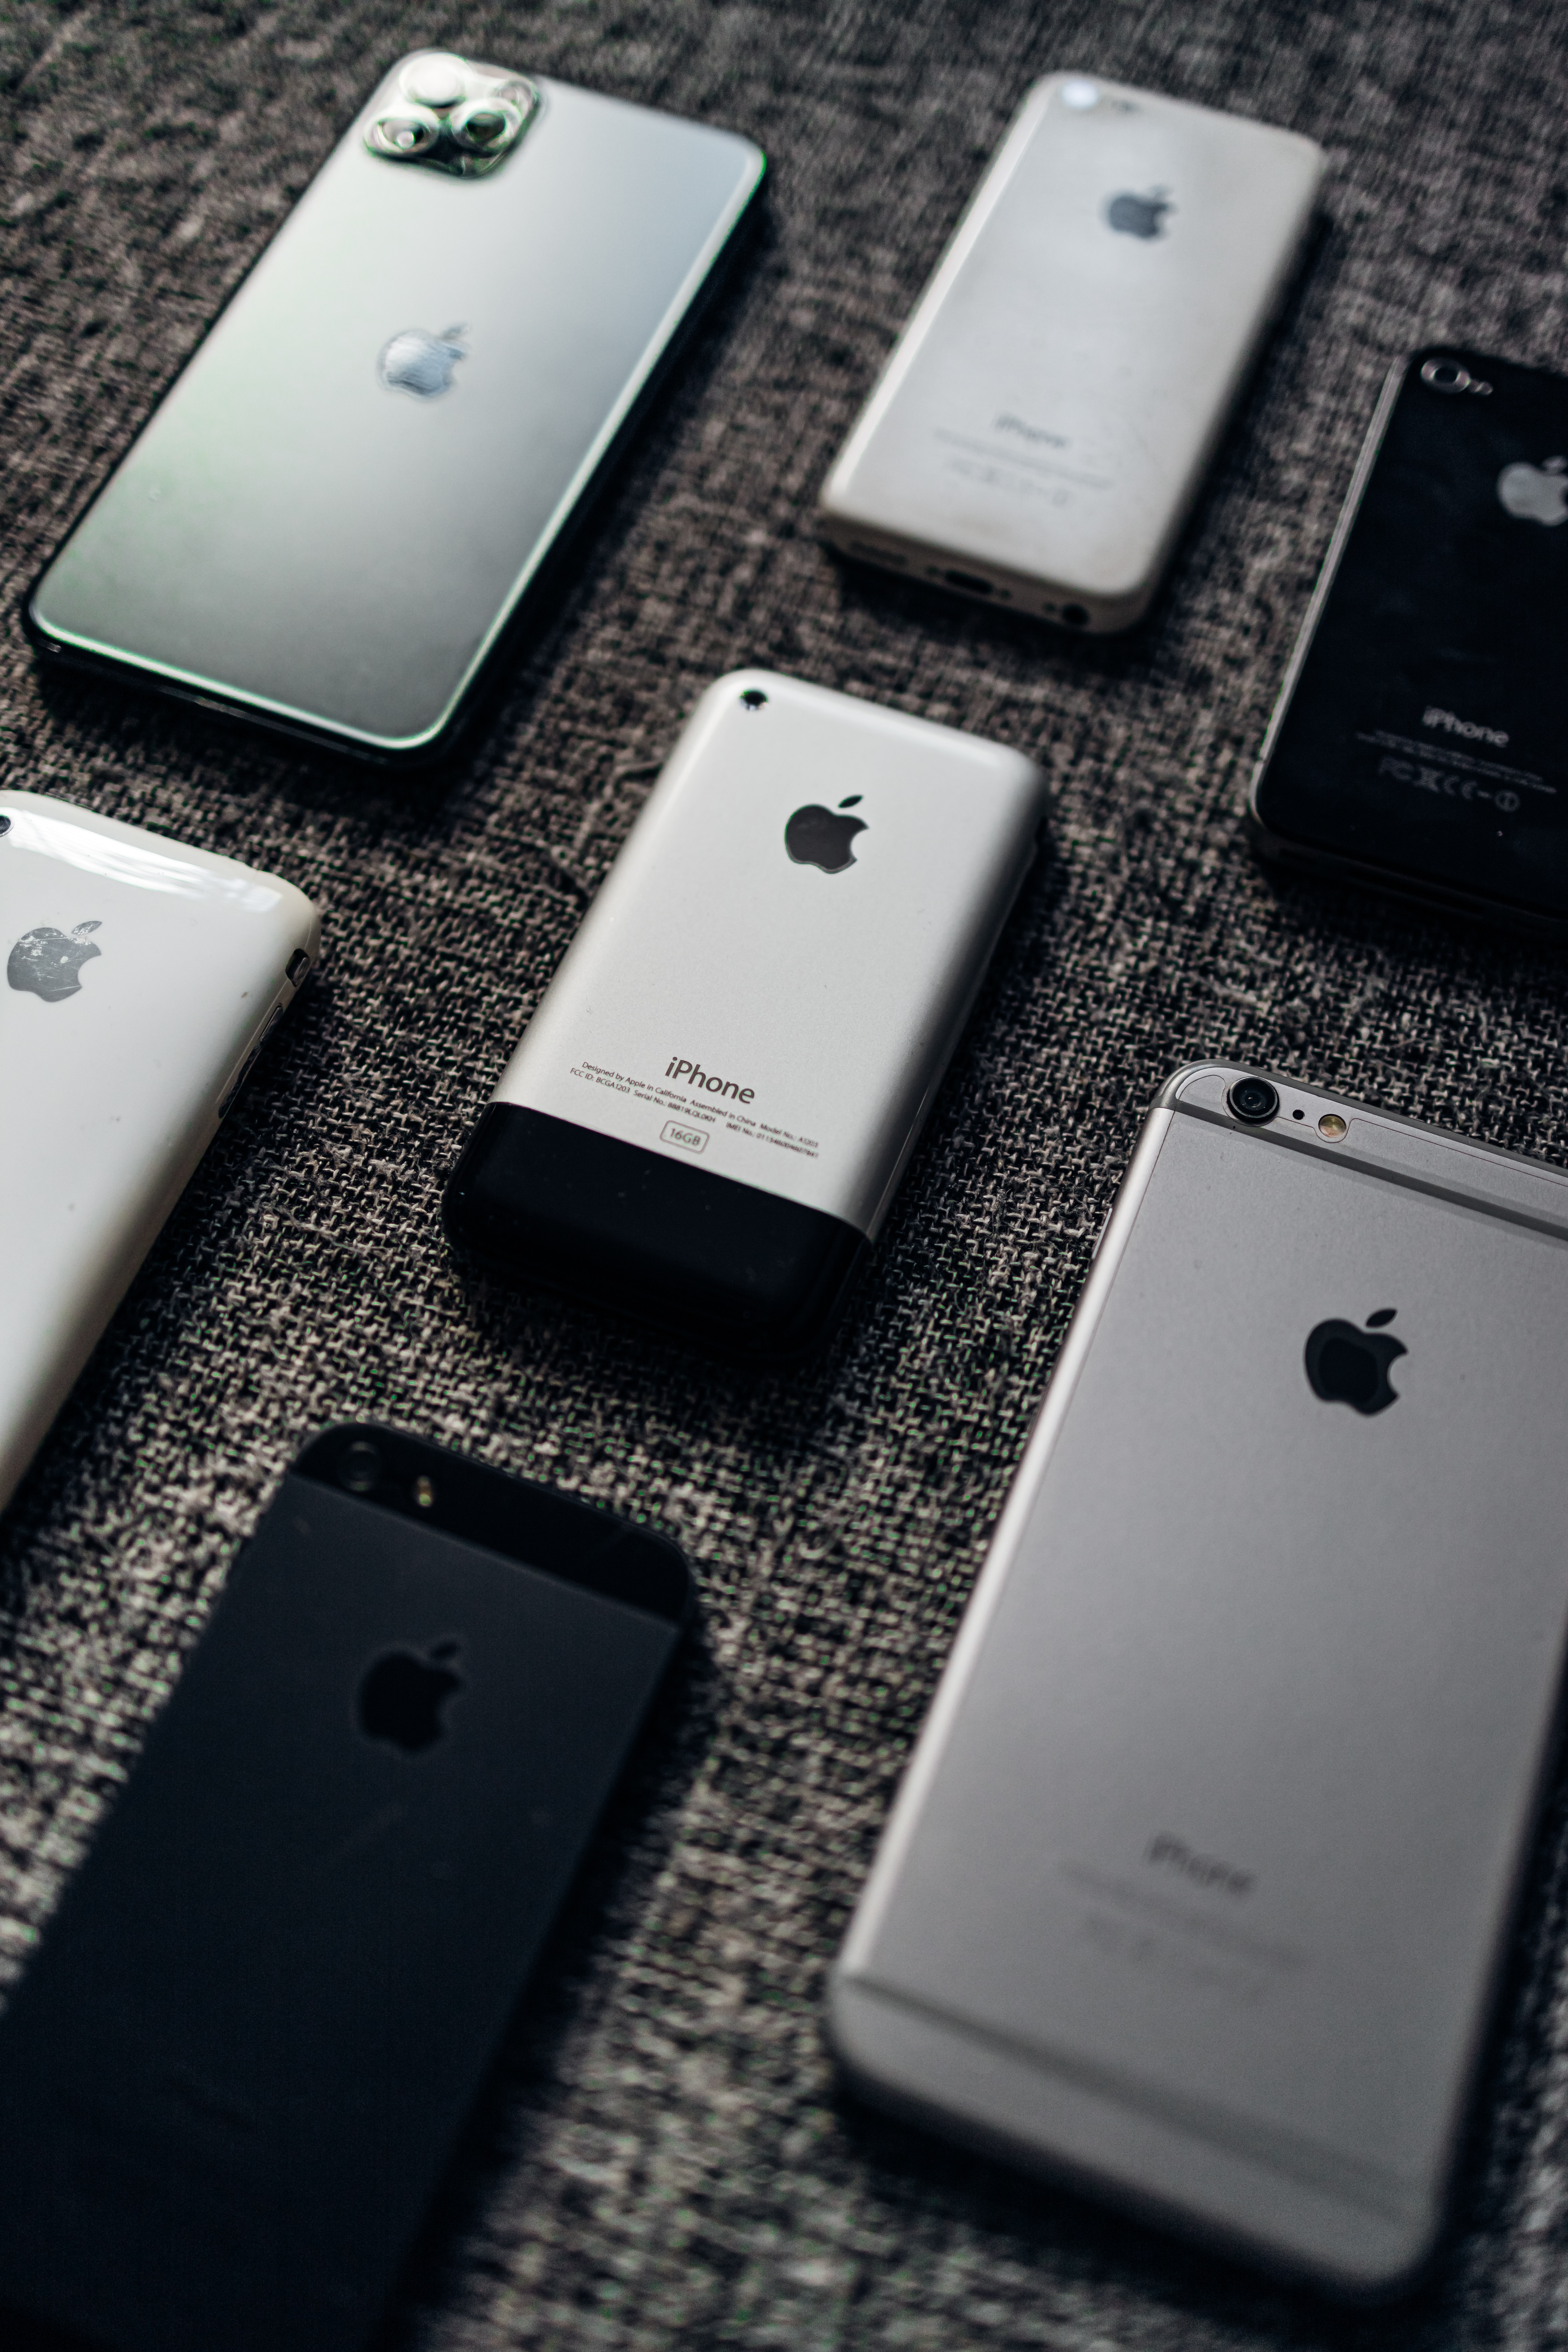 Liverpool VENDE iPhones a MITAD de precio por GRAN BARATA - Grupo Milenio